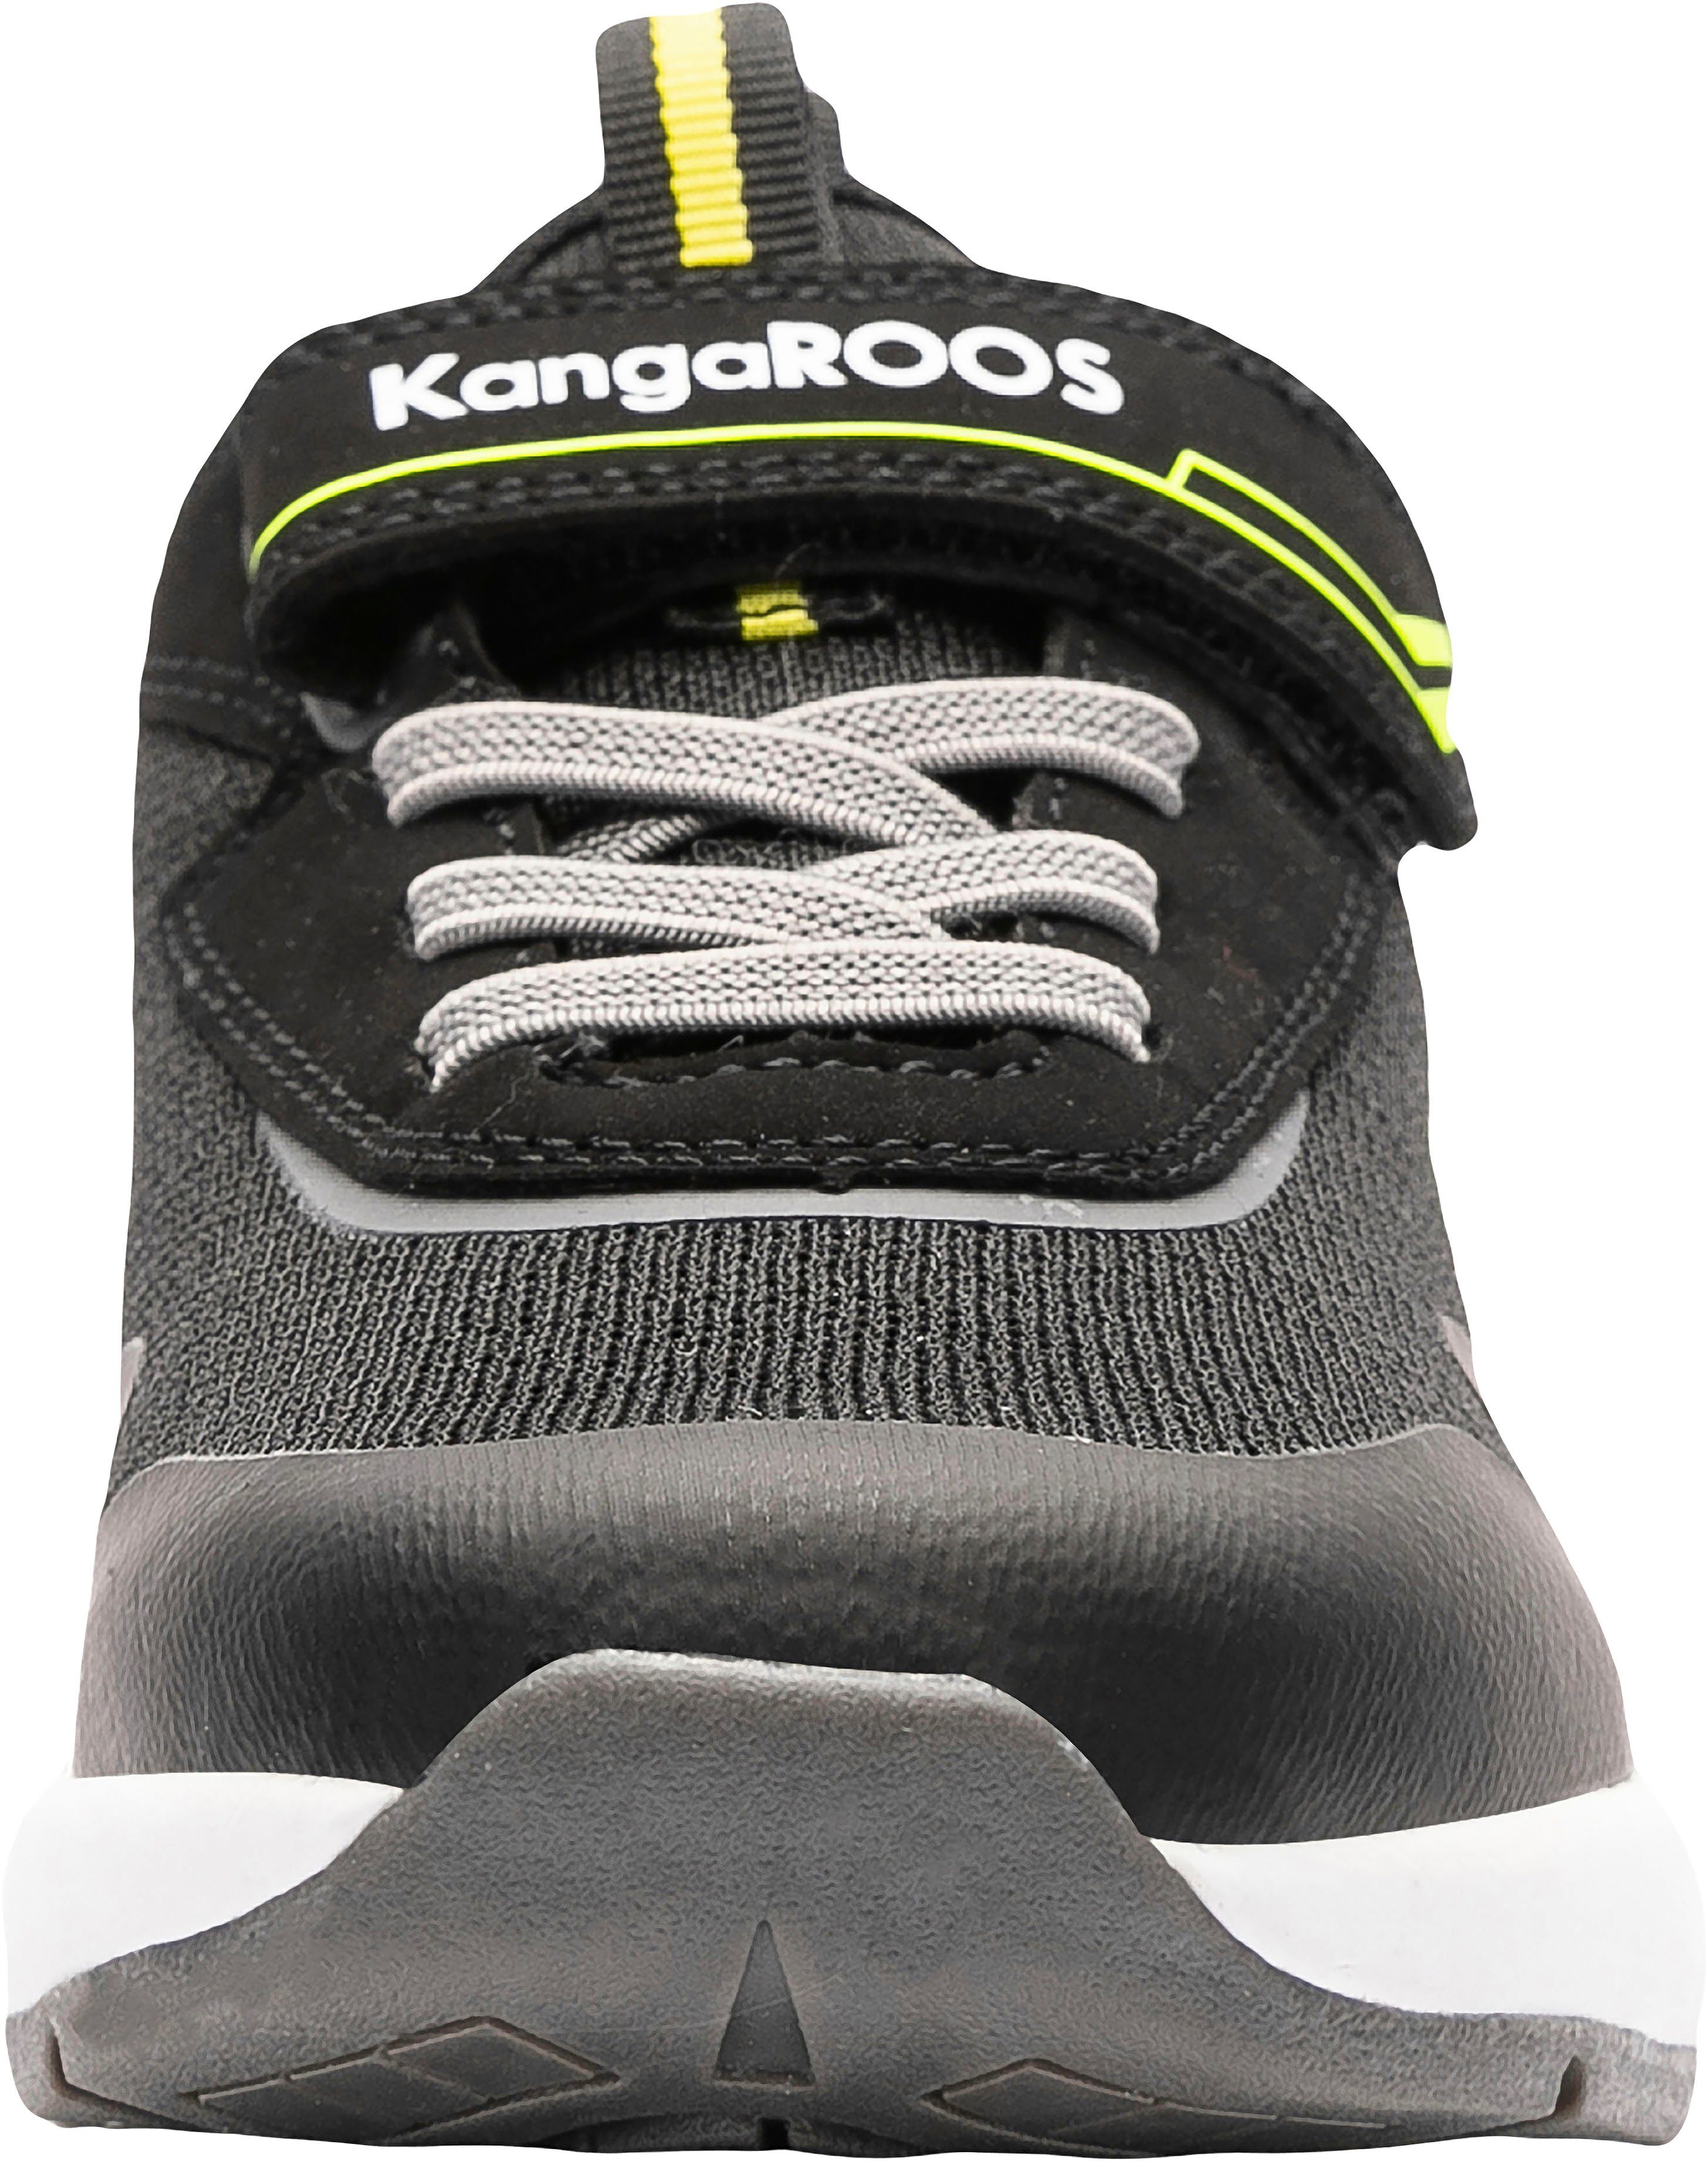 mit schwarz-gelb KangaROOS KD-Gym EV Sneaker Klettverschluss